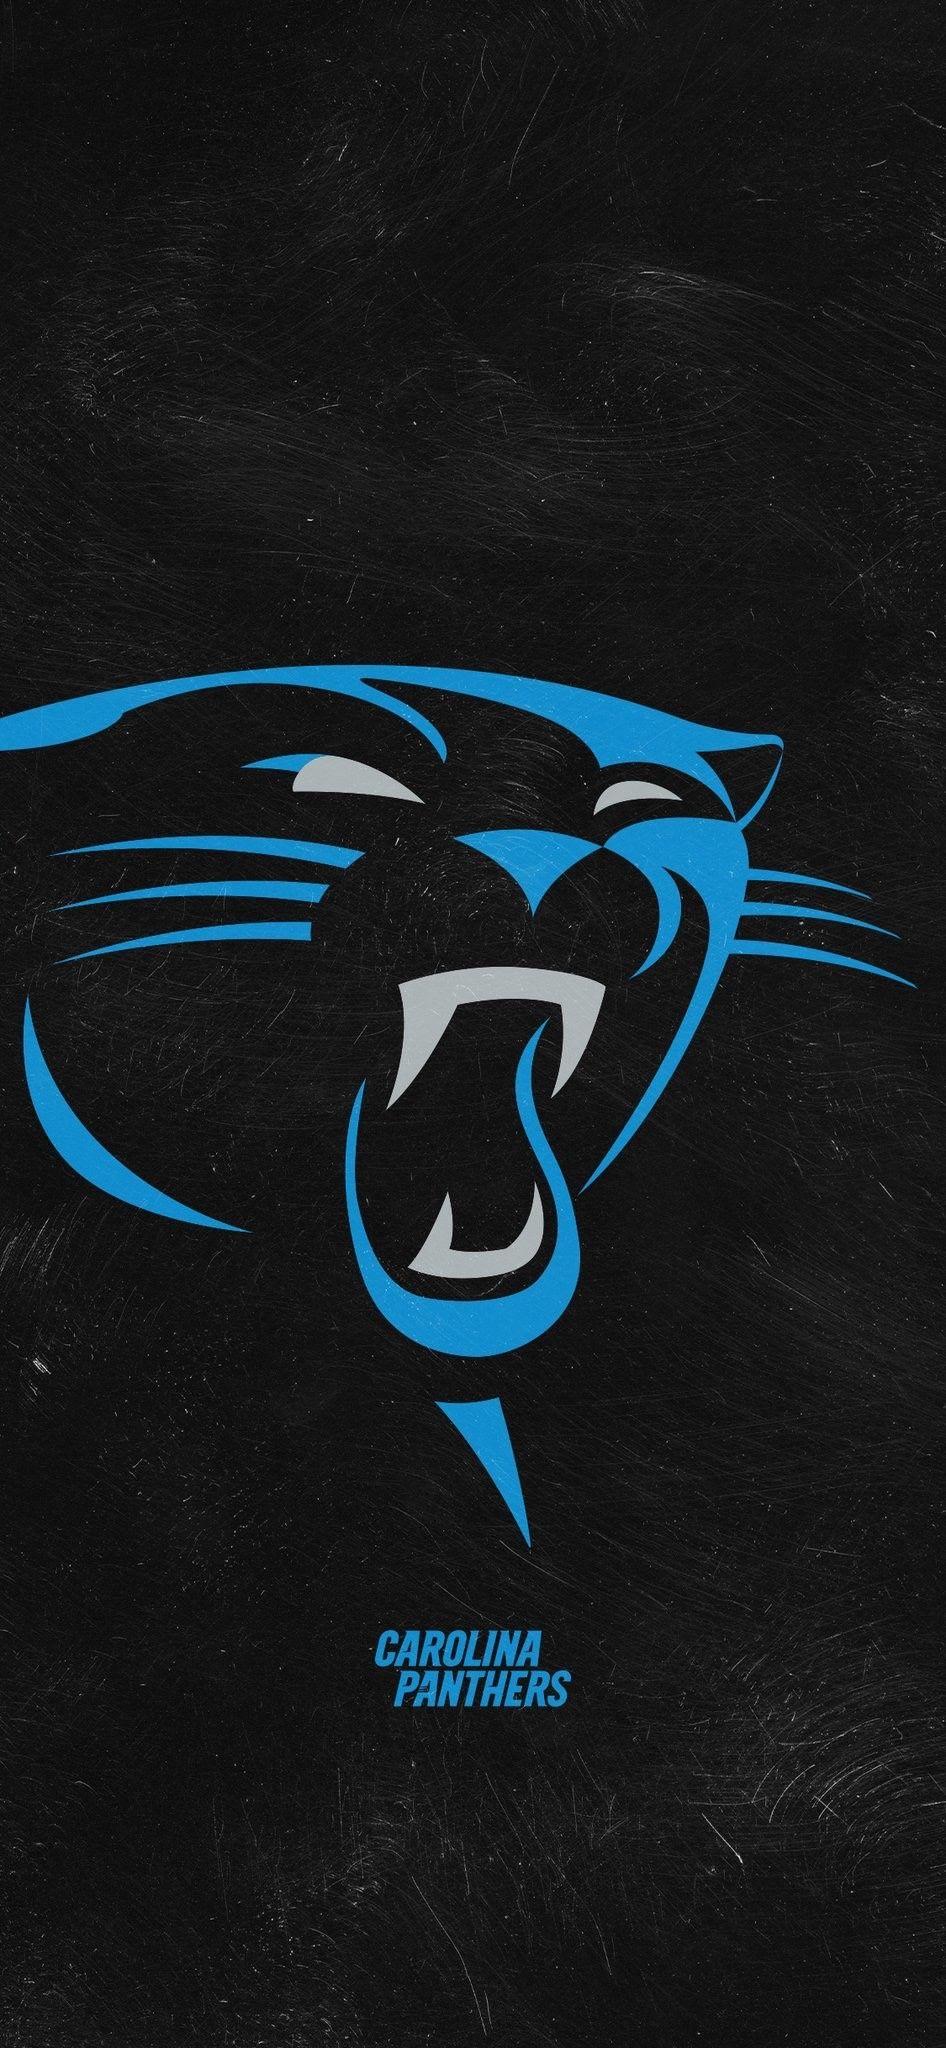 Carolina Panthers Wallpapers - Top Free